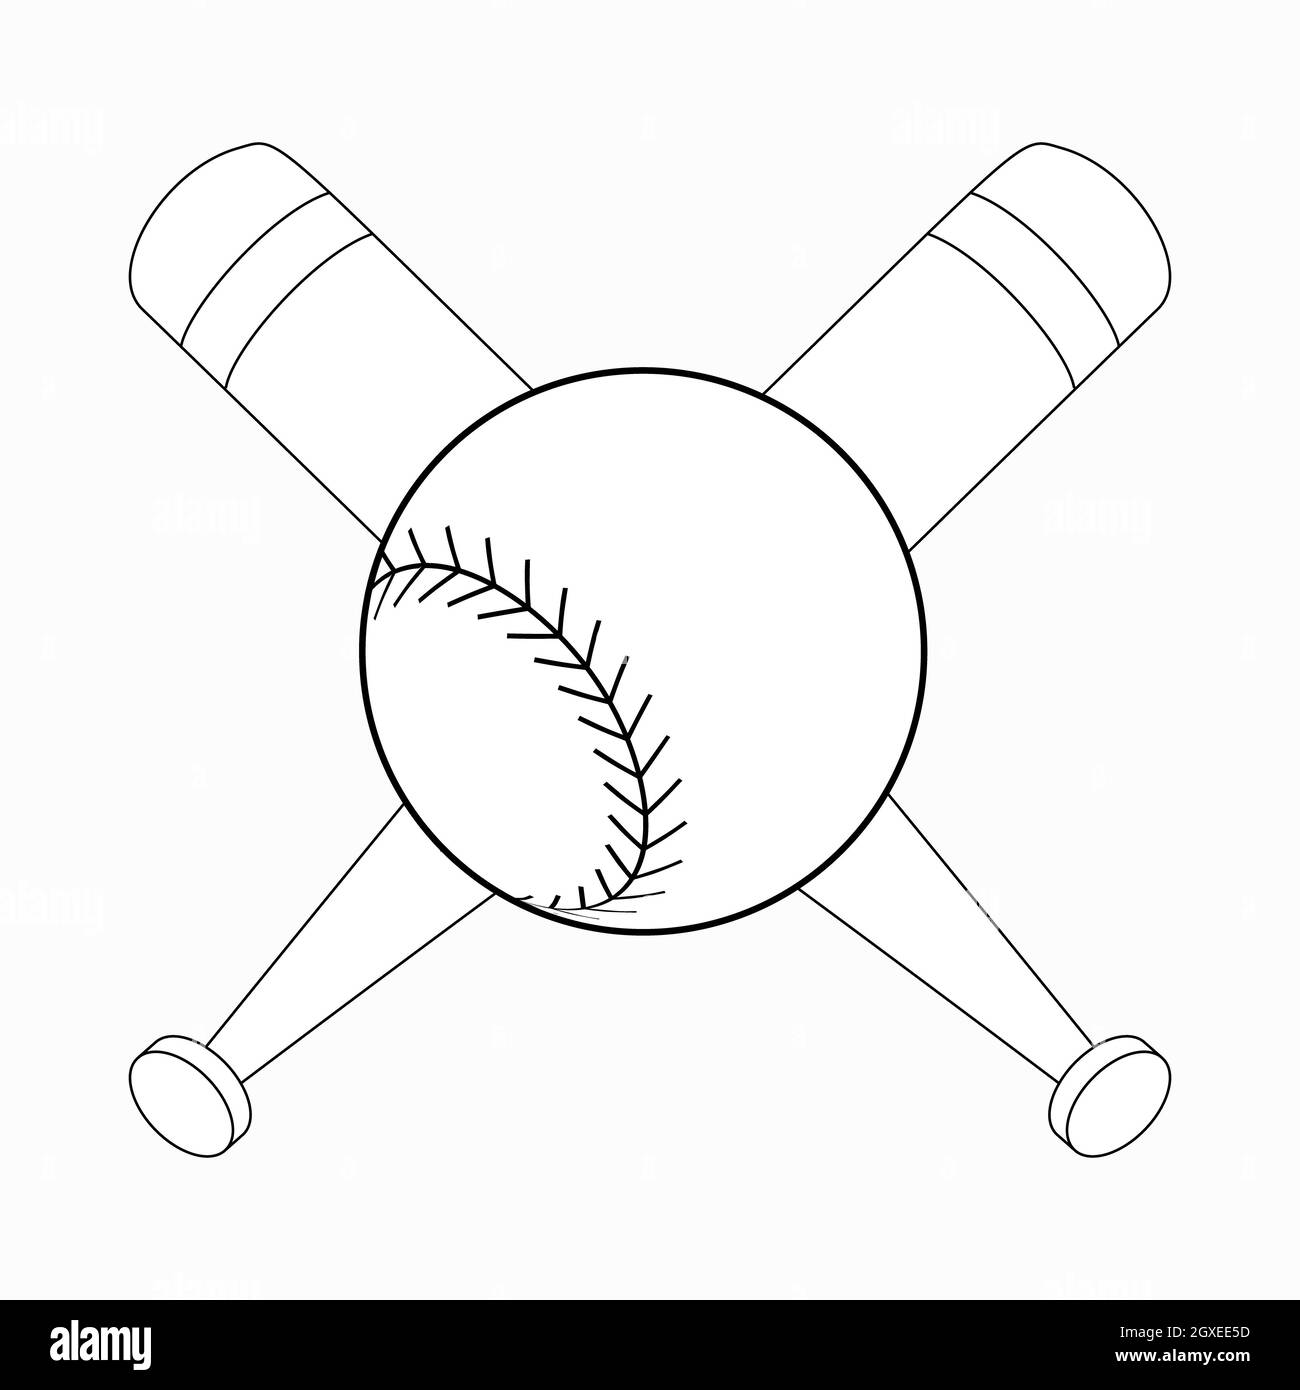 Icône en forme de chauve-souris et de balle de baseball en 3D isométrique sur fond blanc Banque D'Images